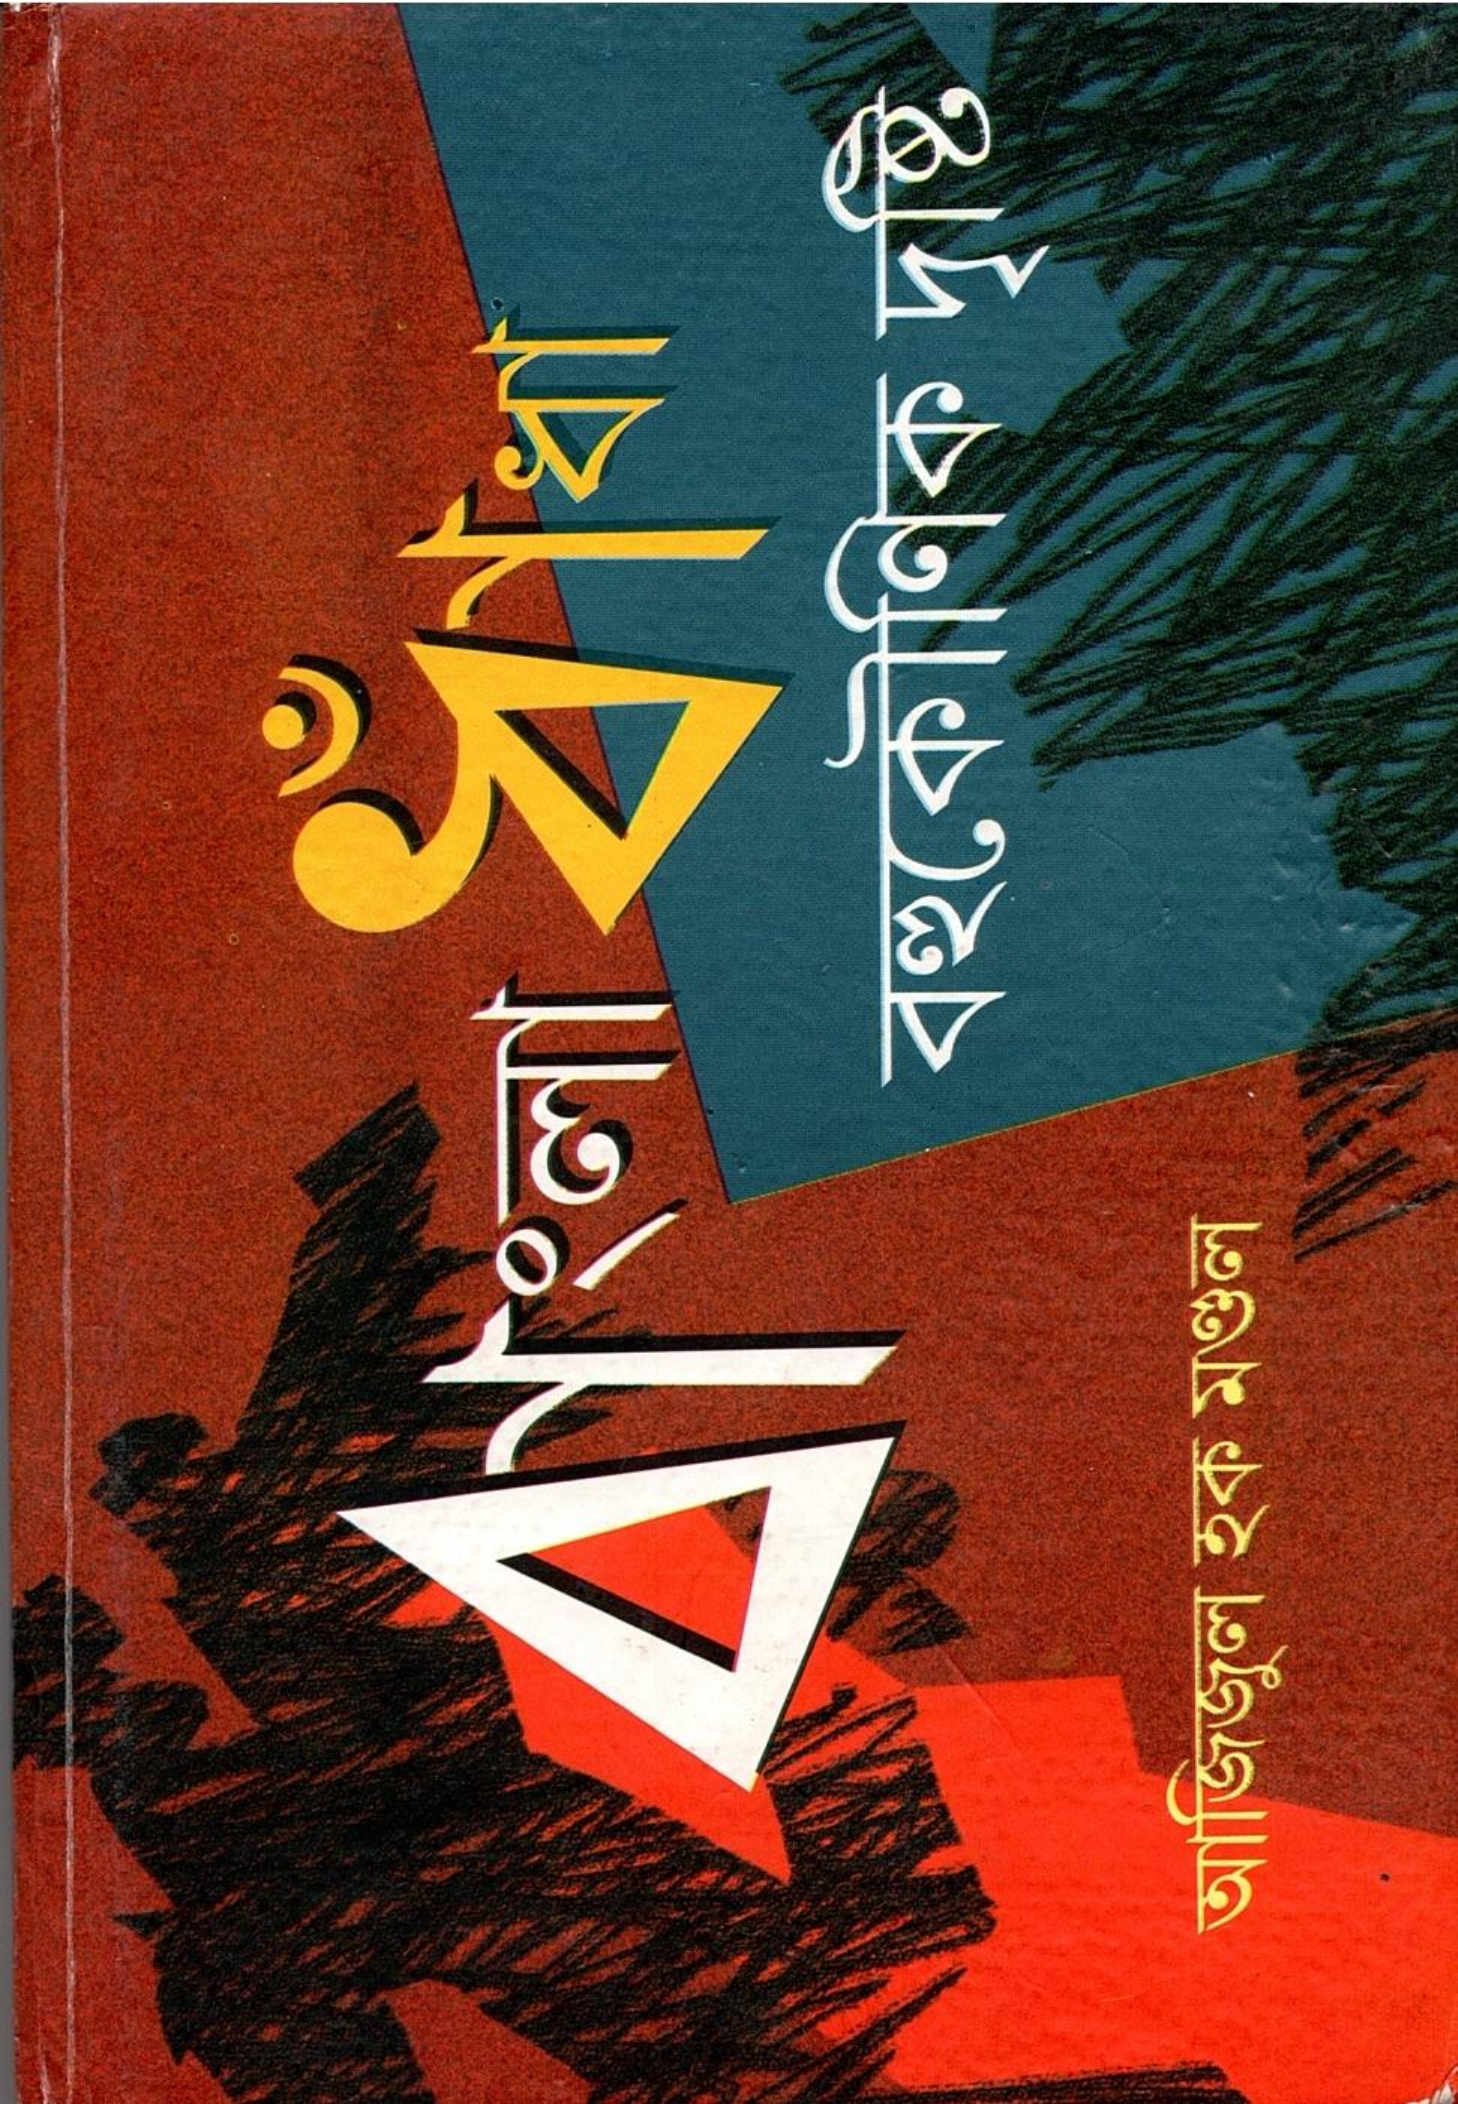 বাংলা ধাঁধা : বহুকৌণিক দৃষ্টি | Bangla Dhandha: Bahukounik Drishti